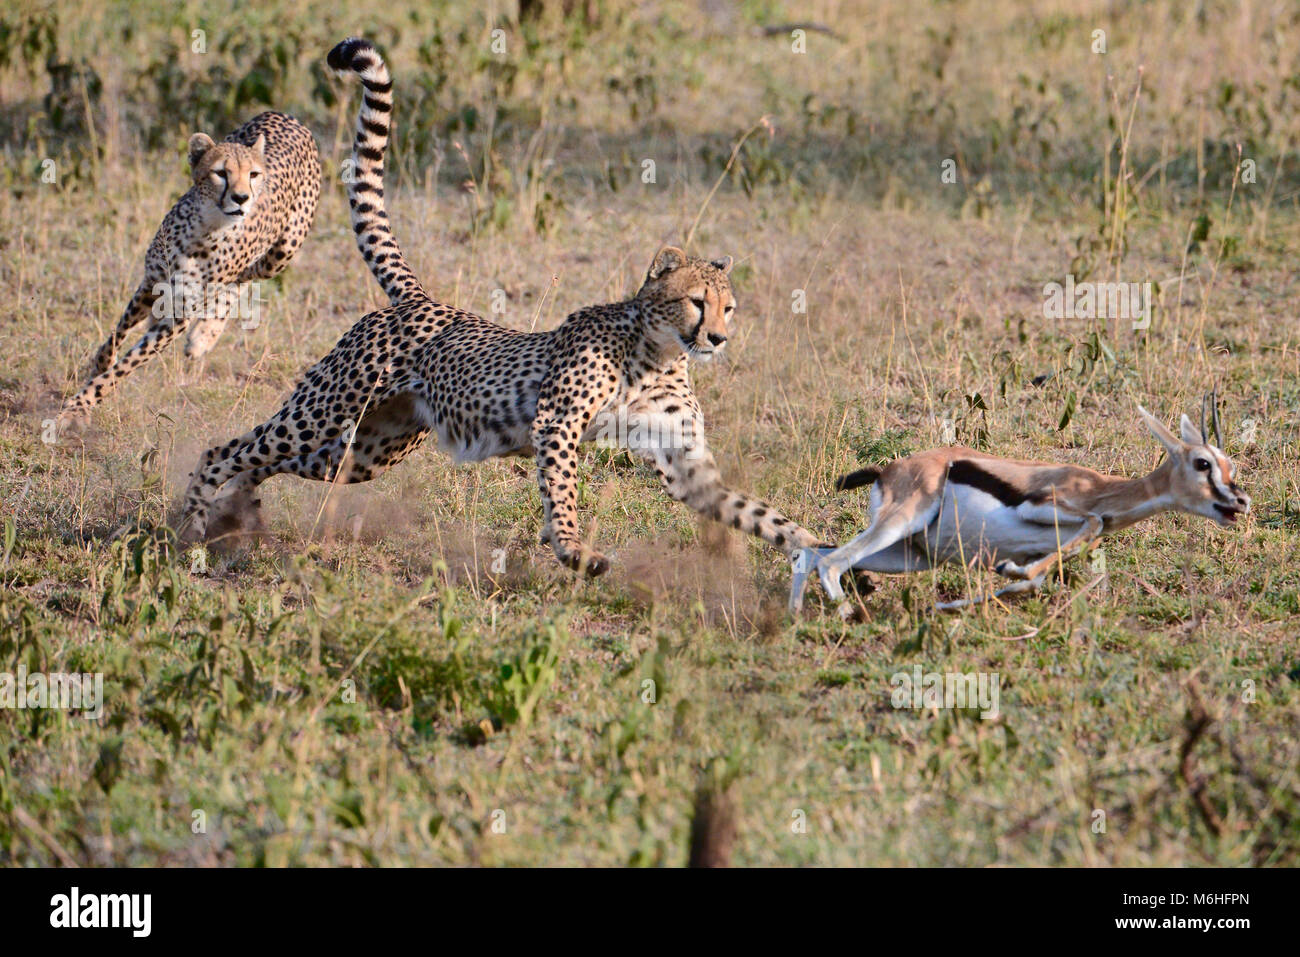 Le Parc National du Serengeti en Tanzanie, est un des plus spectaculaires des destinations de la faune sur terre. Le guépard chasse sequnce gazellech tuer frères Banque D'Images